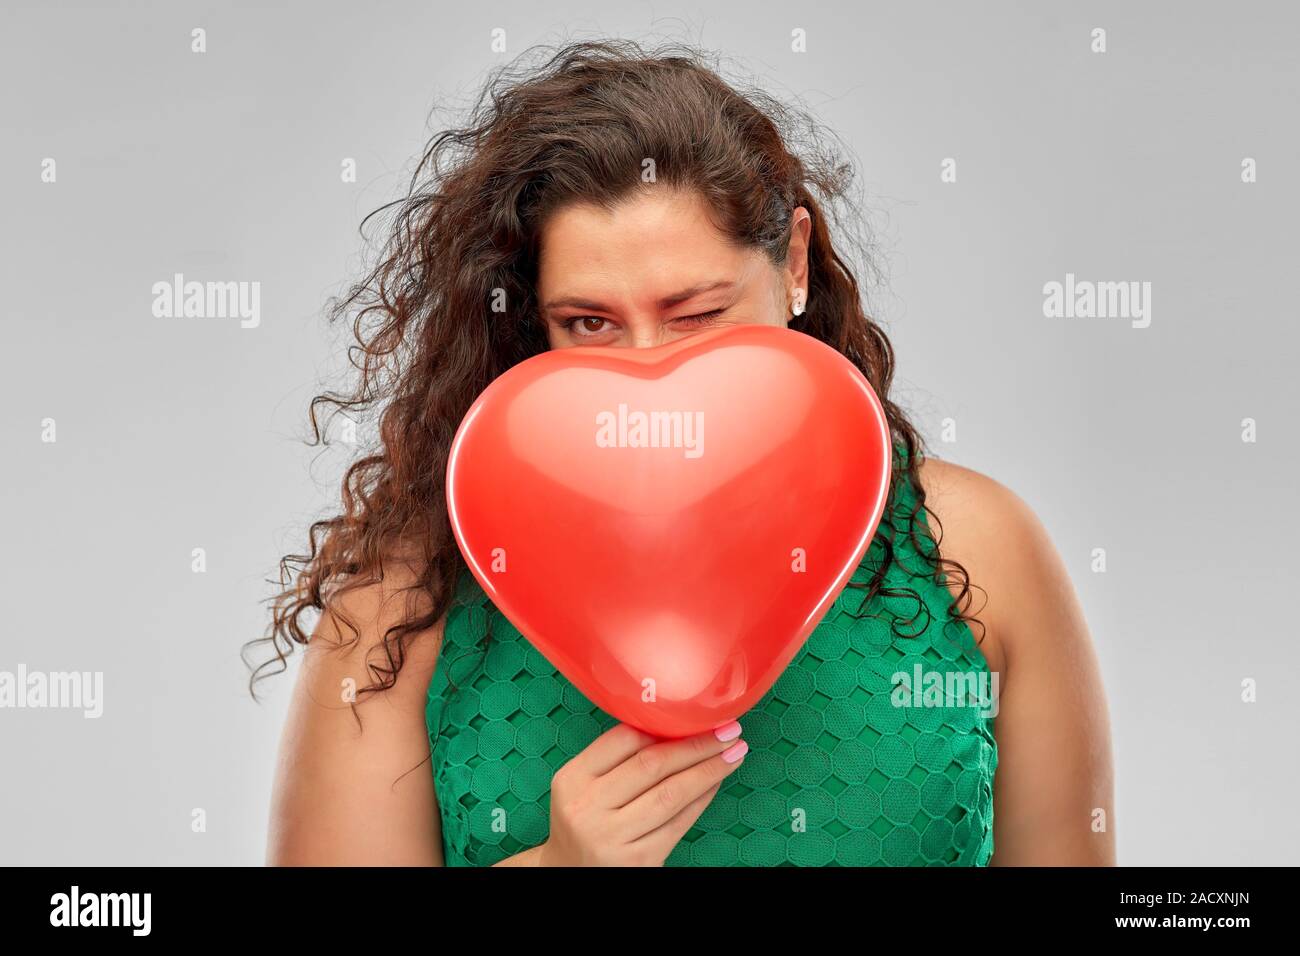 Il giorno di san valentino, le persone e il concetto di amore - giocosa donna in abito verde di nascondersi dietro a cuore rosso a forma di palloncino su sfondo grigio Foto Stock